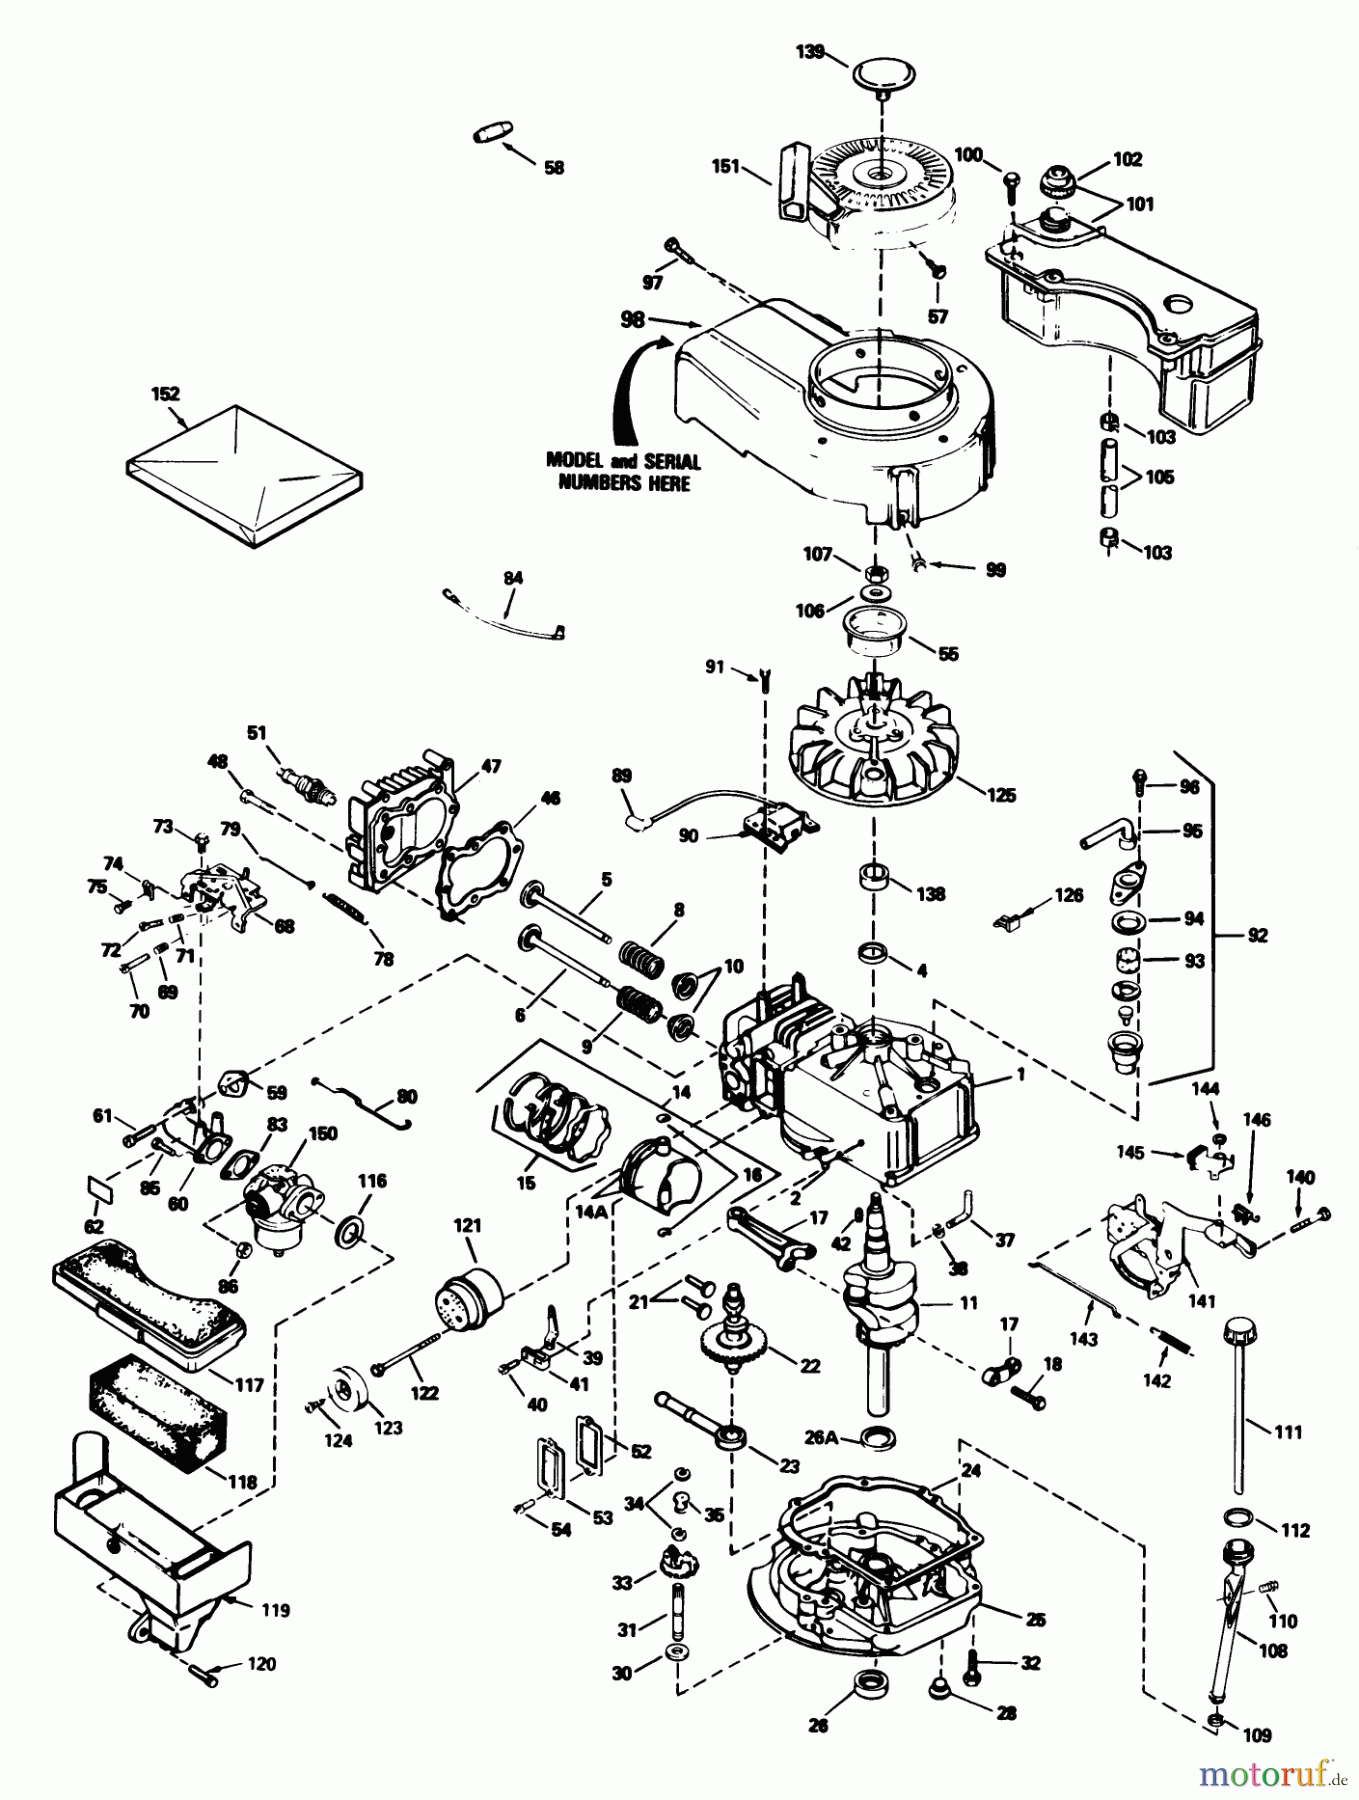  Toro Neu Mowers, Walk-Behind Seite 1 20692 - Toro Lawnmower, 1988 (8000001-8999999) ENGINE TECUMSEH MODEL NO. TVS100-44011B